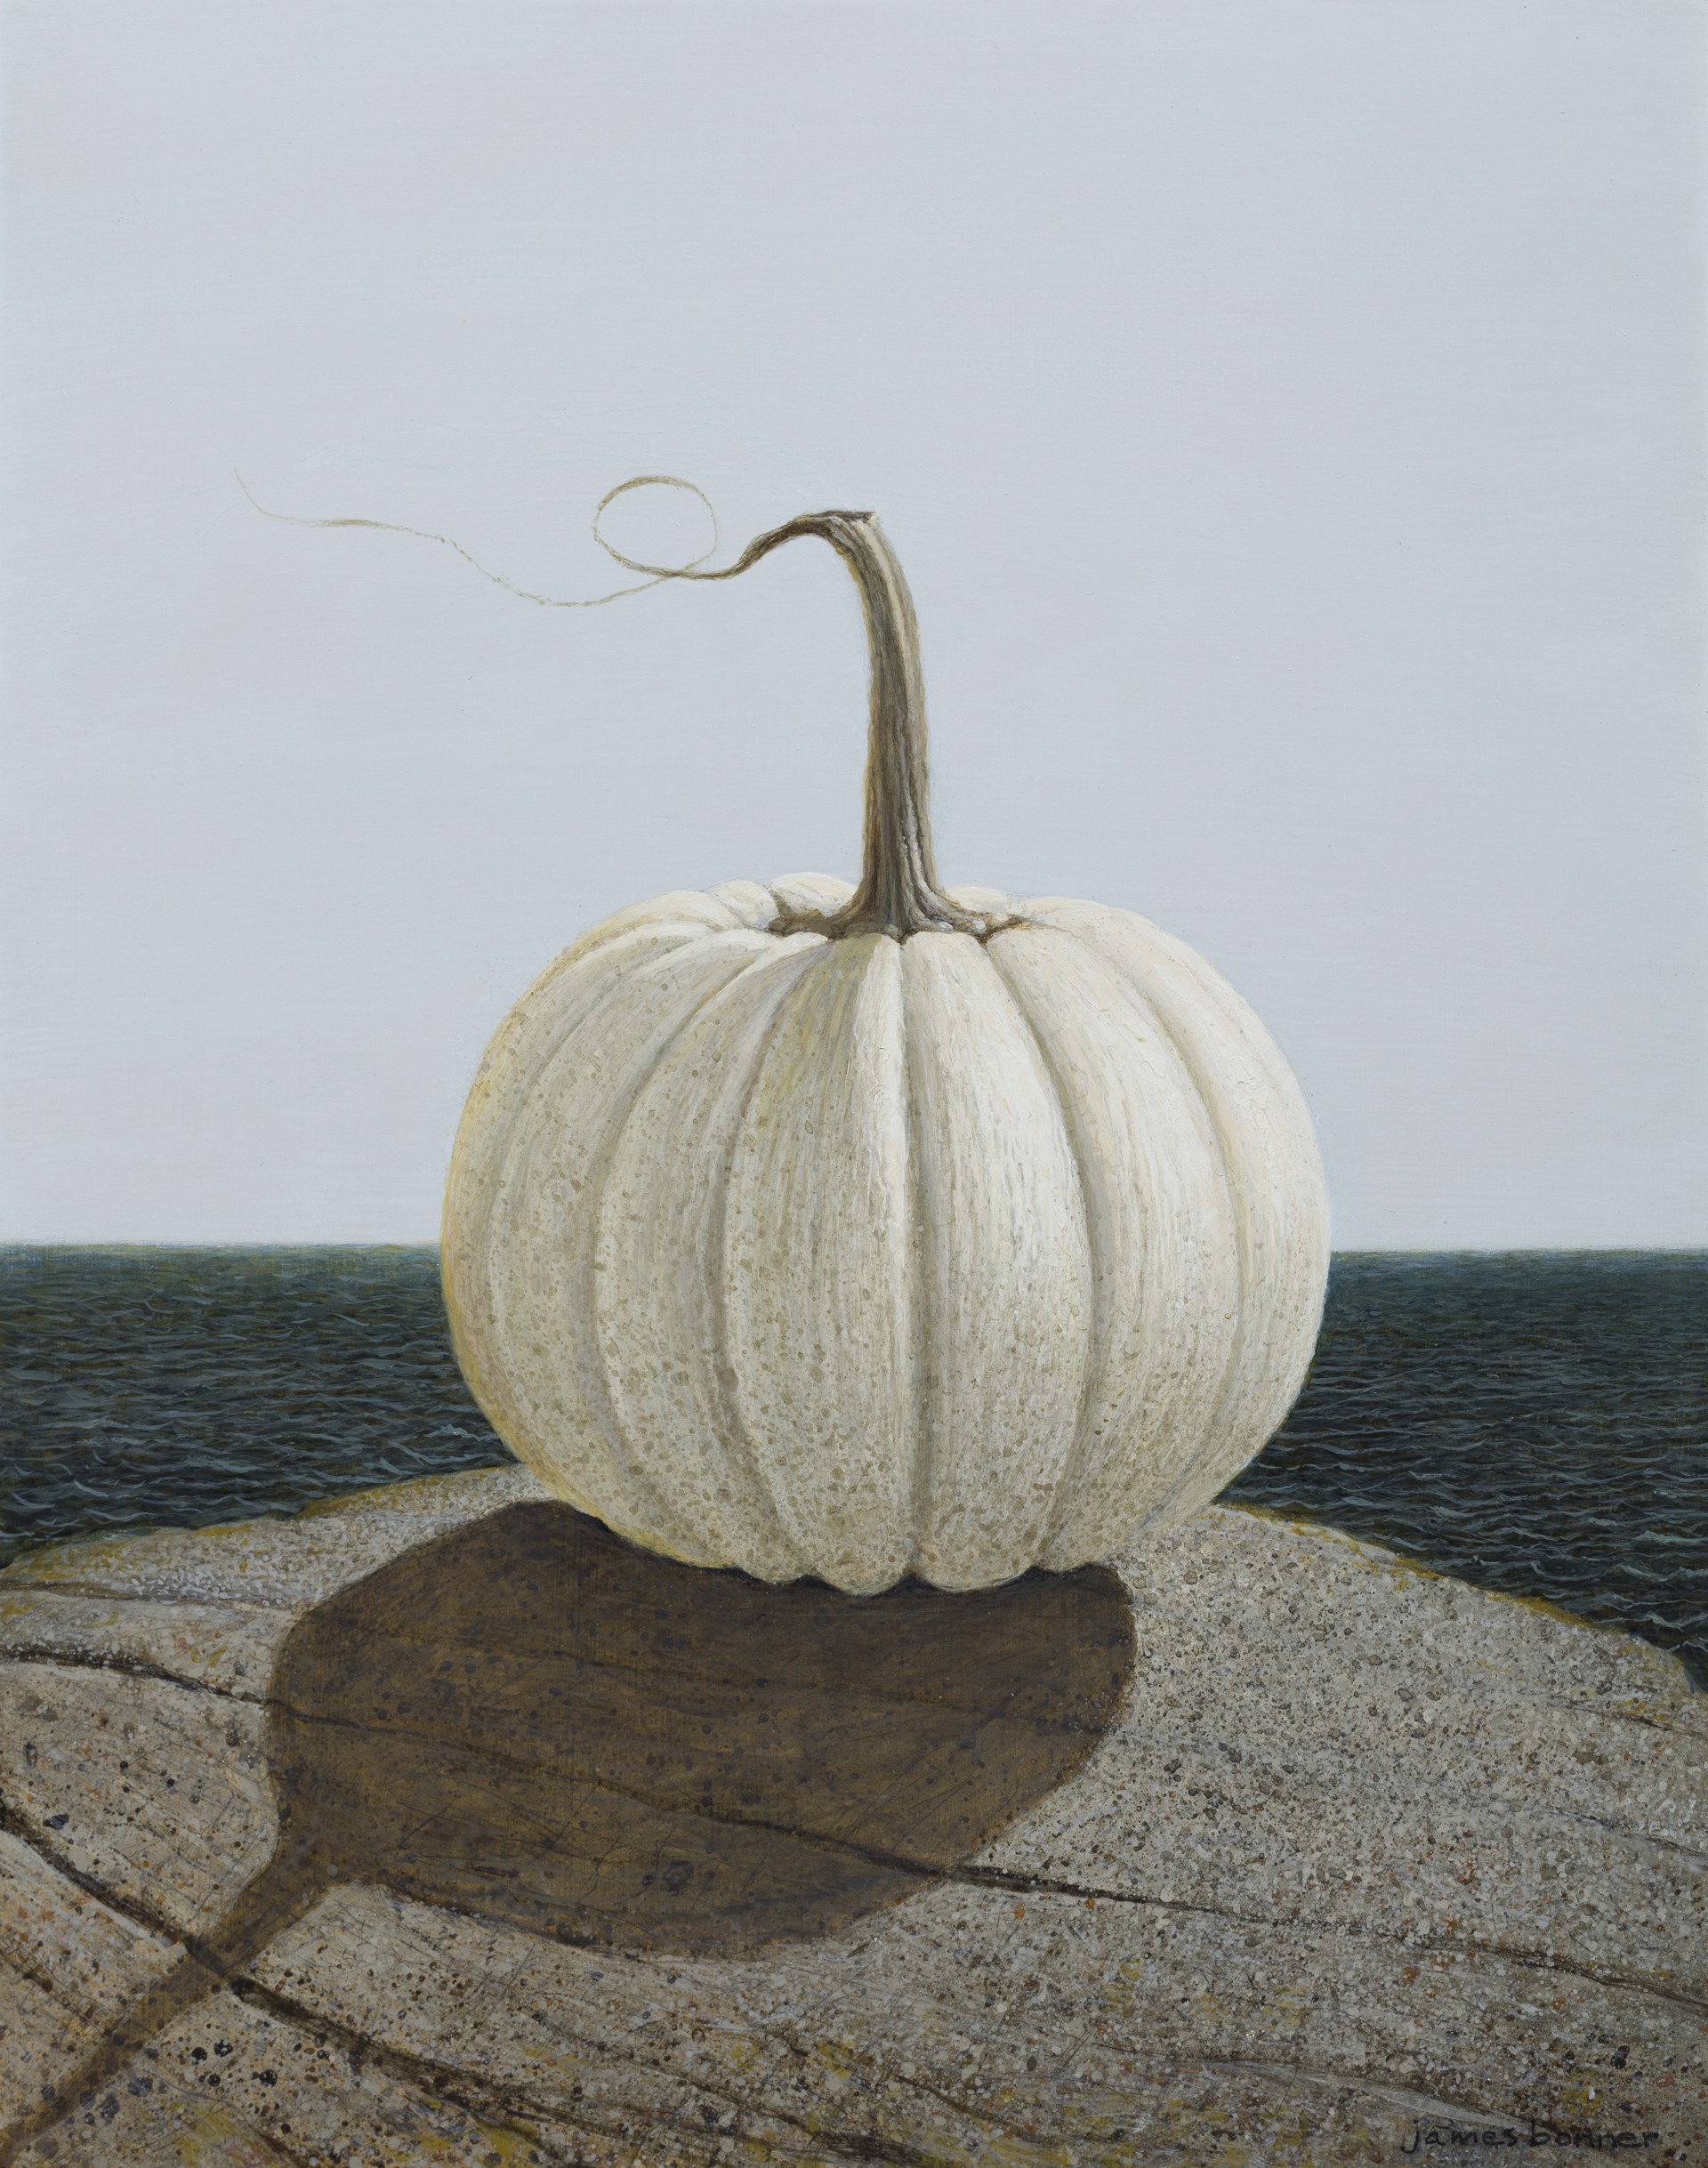 White Sea Pumpkin by James Bonner